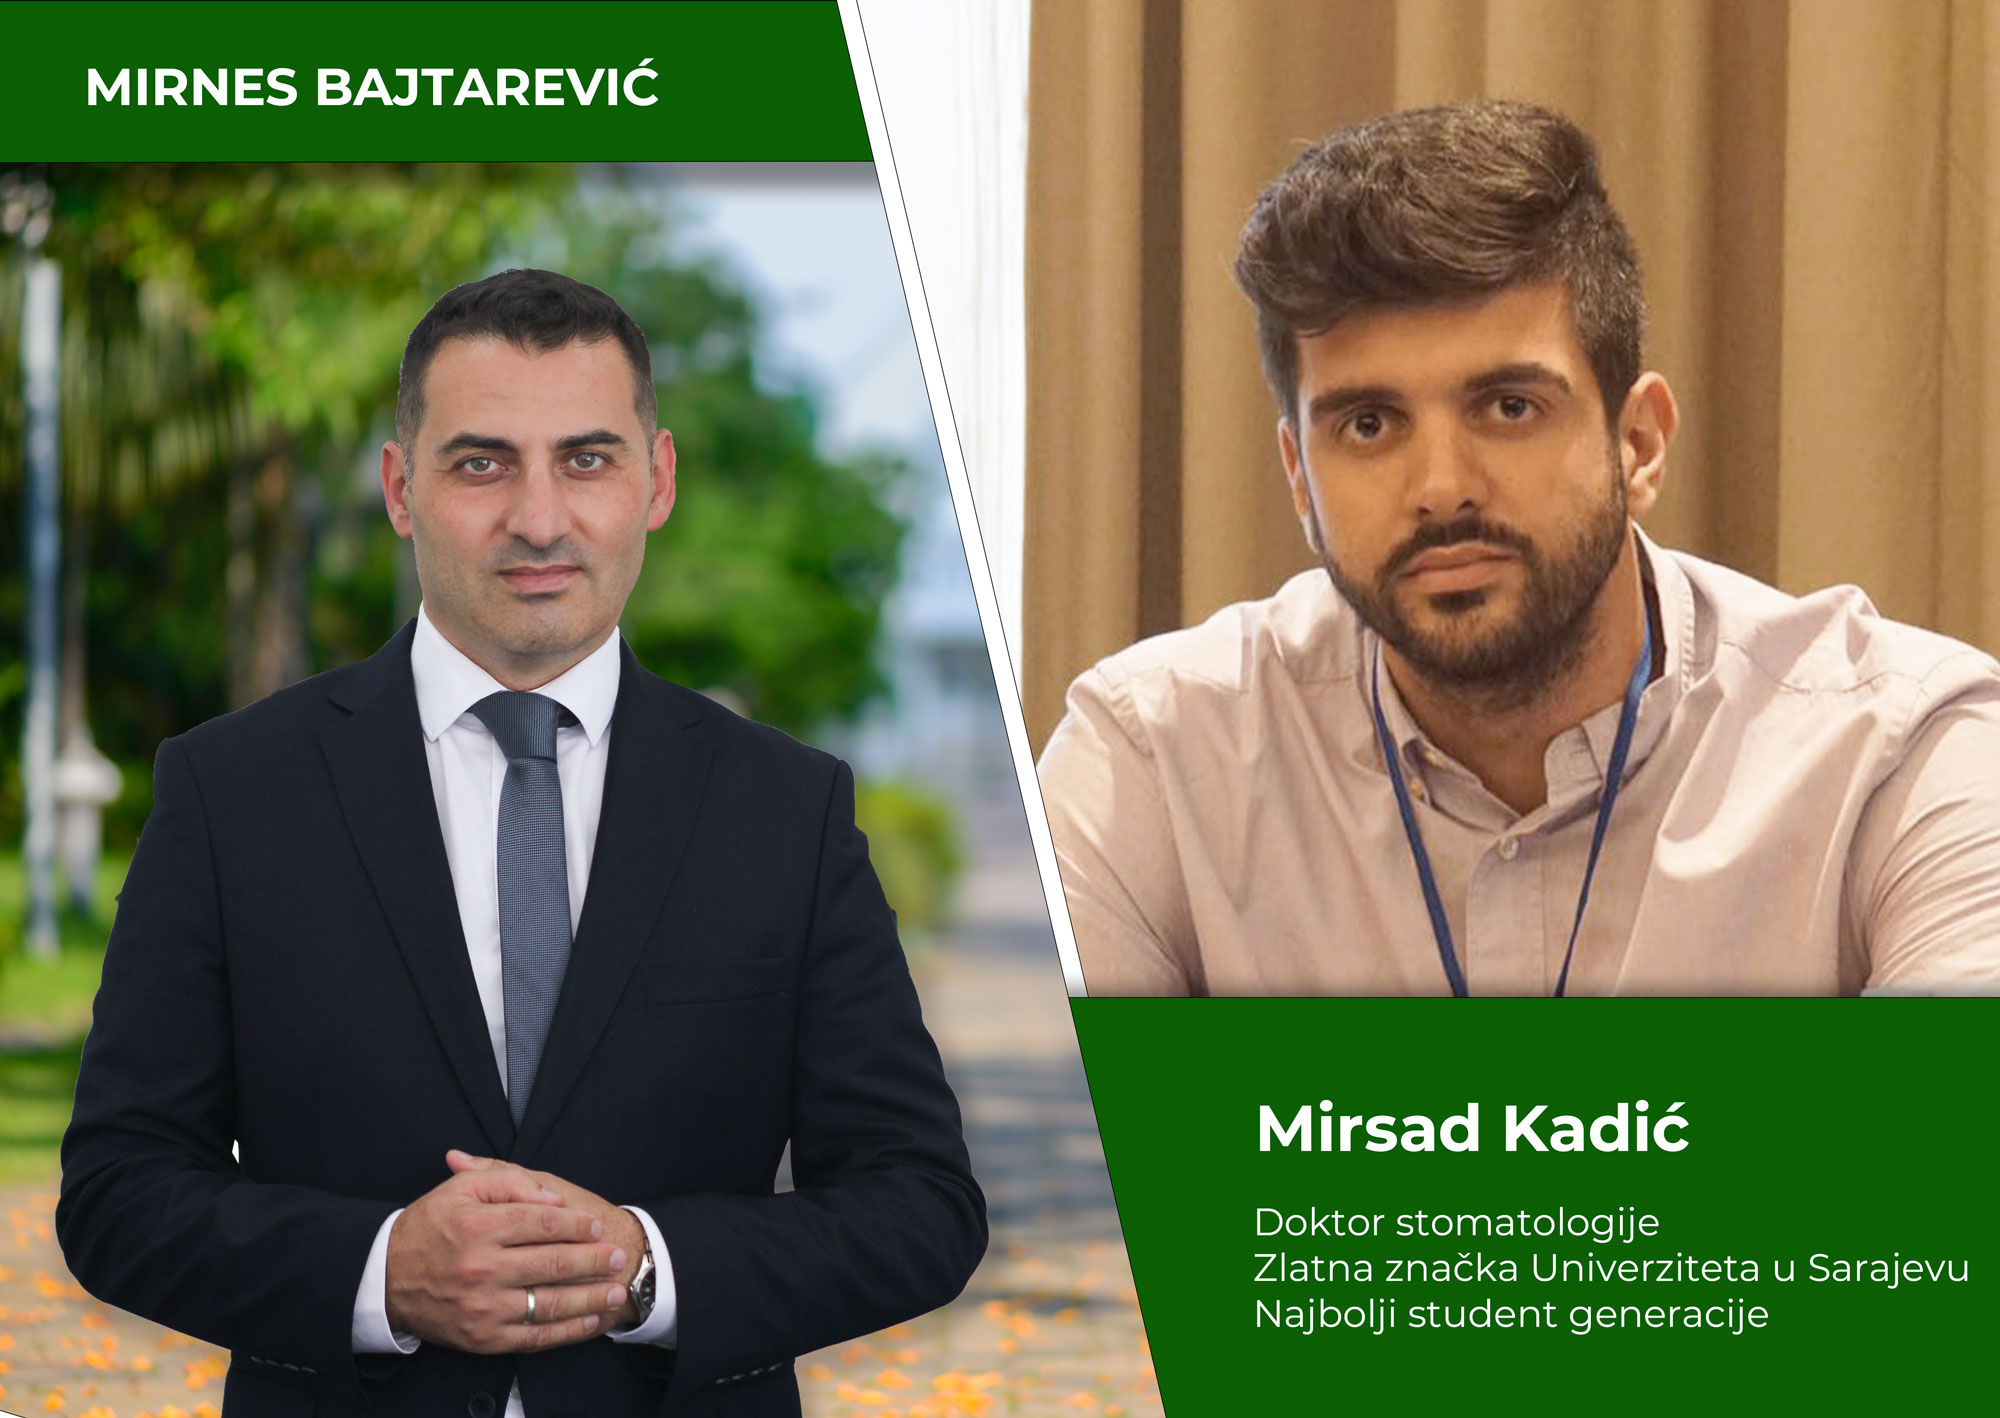 Mirsad Kadić:U Mirnesu Bajtareviću kao načelniku Općine Kakanj iskreno vidim zamajac novih, još jačih i intenzivnijih aktivnosti